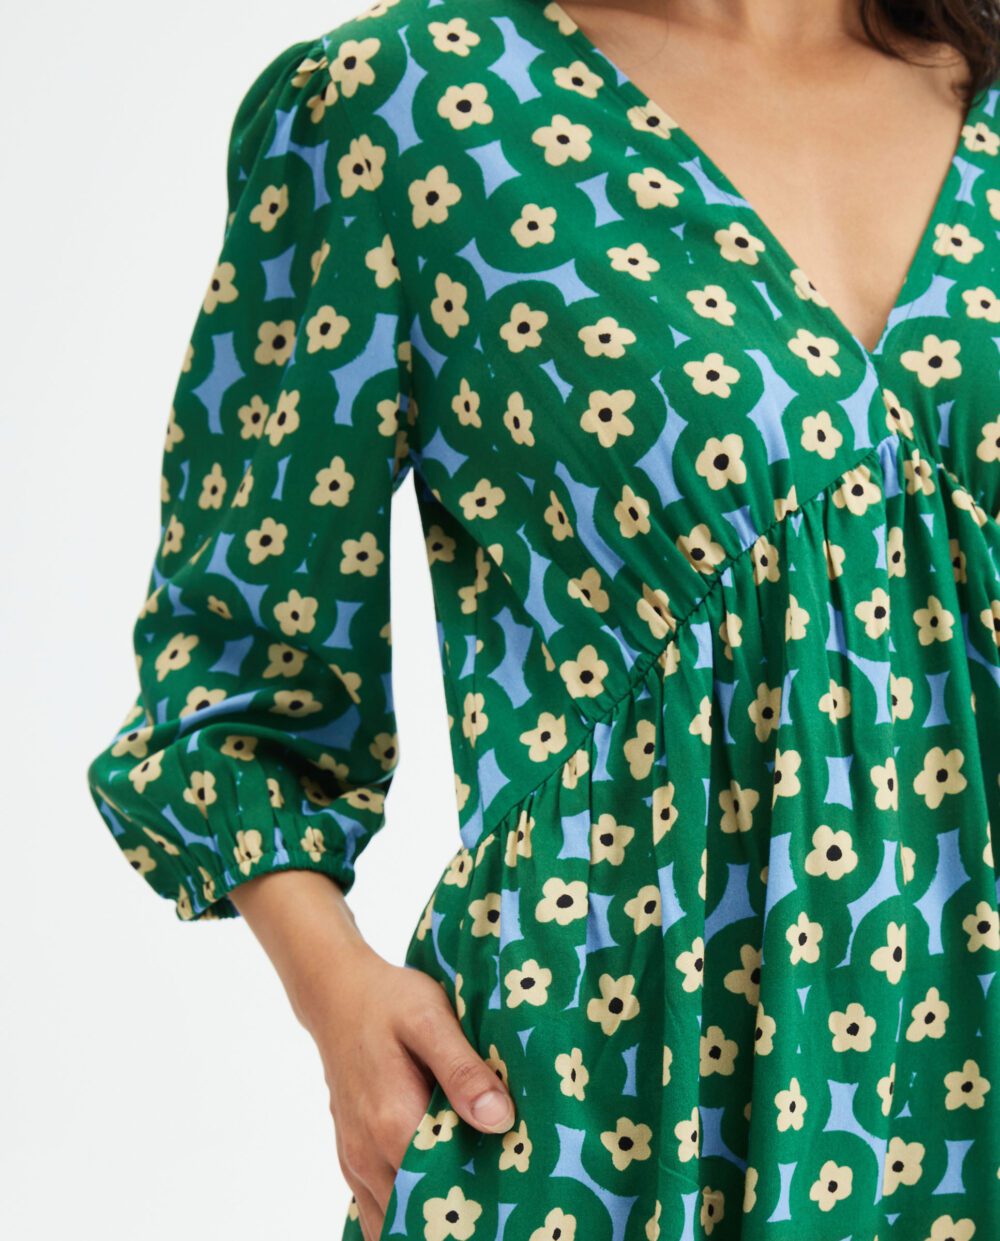 Μini Πράσινο Φόρεμα Με Print Λουλούδια Compania Fantastica